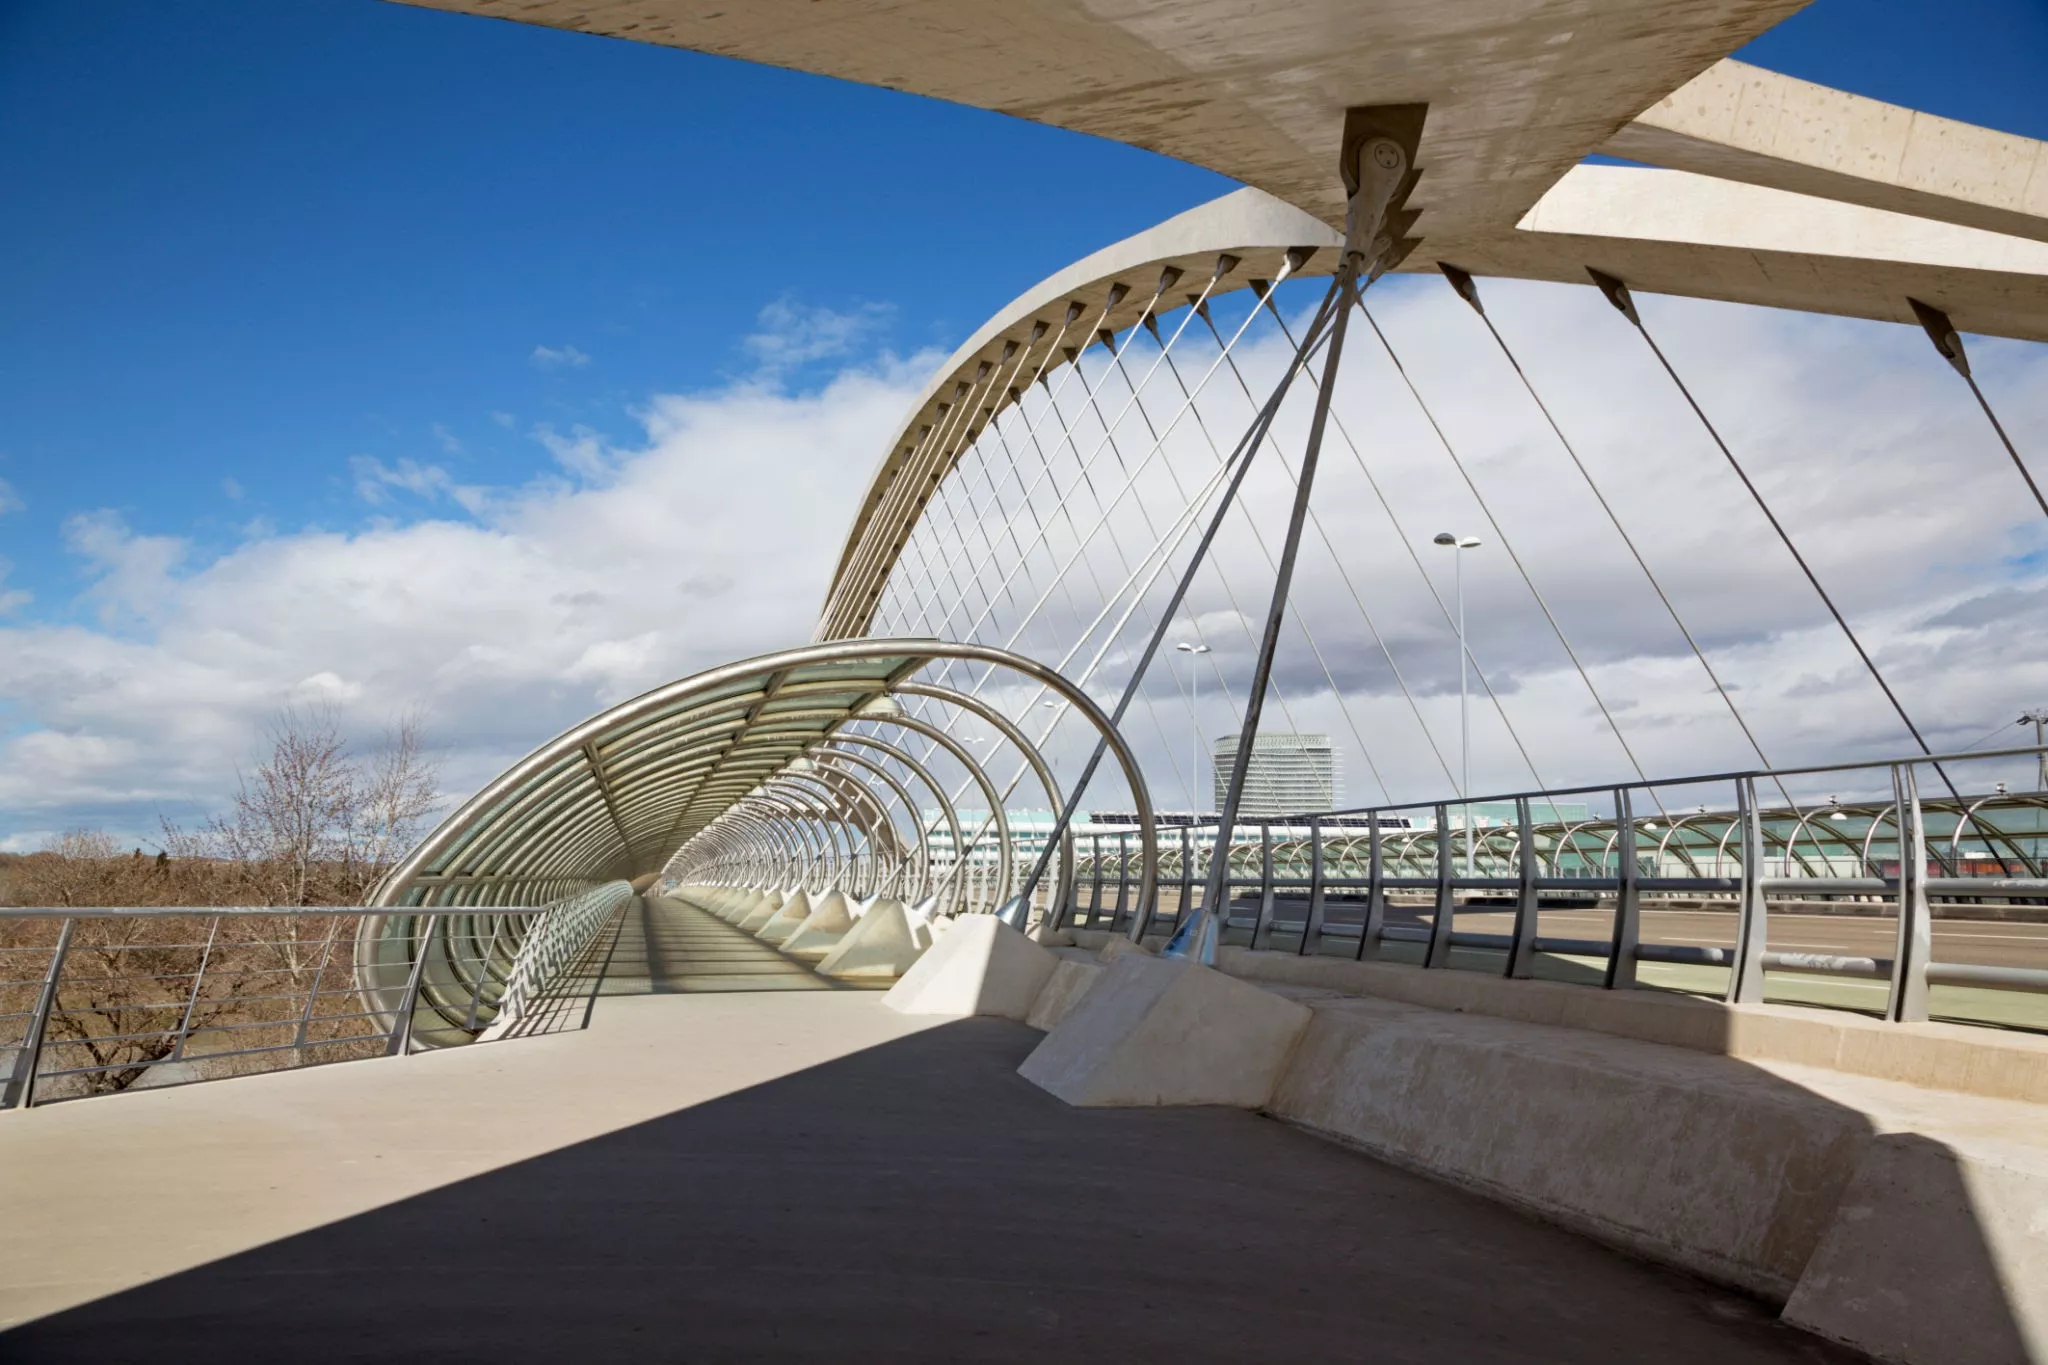 Third Millennium Bridge in Spain, Europe | Architecture - Rated 0.8